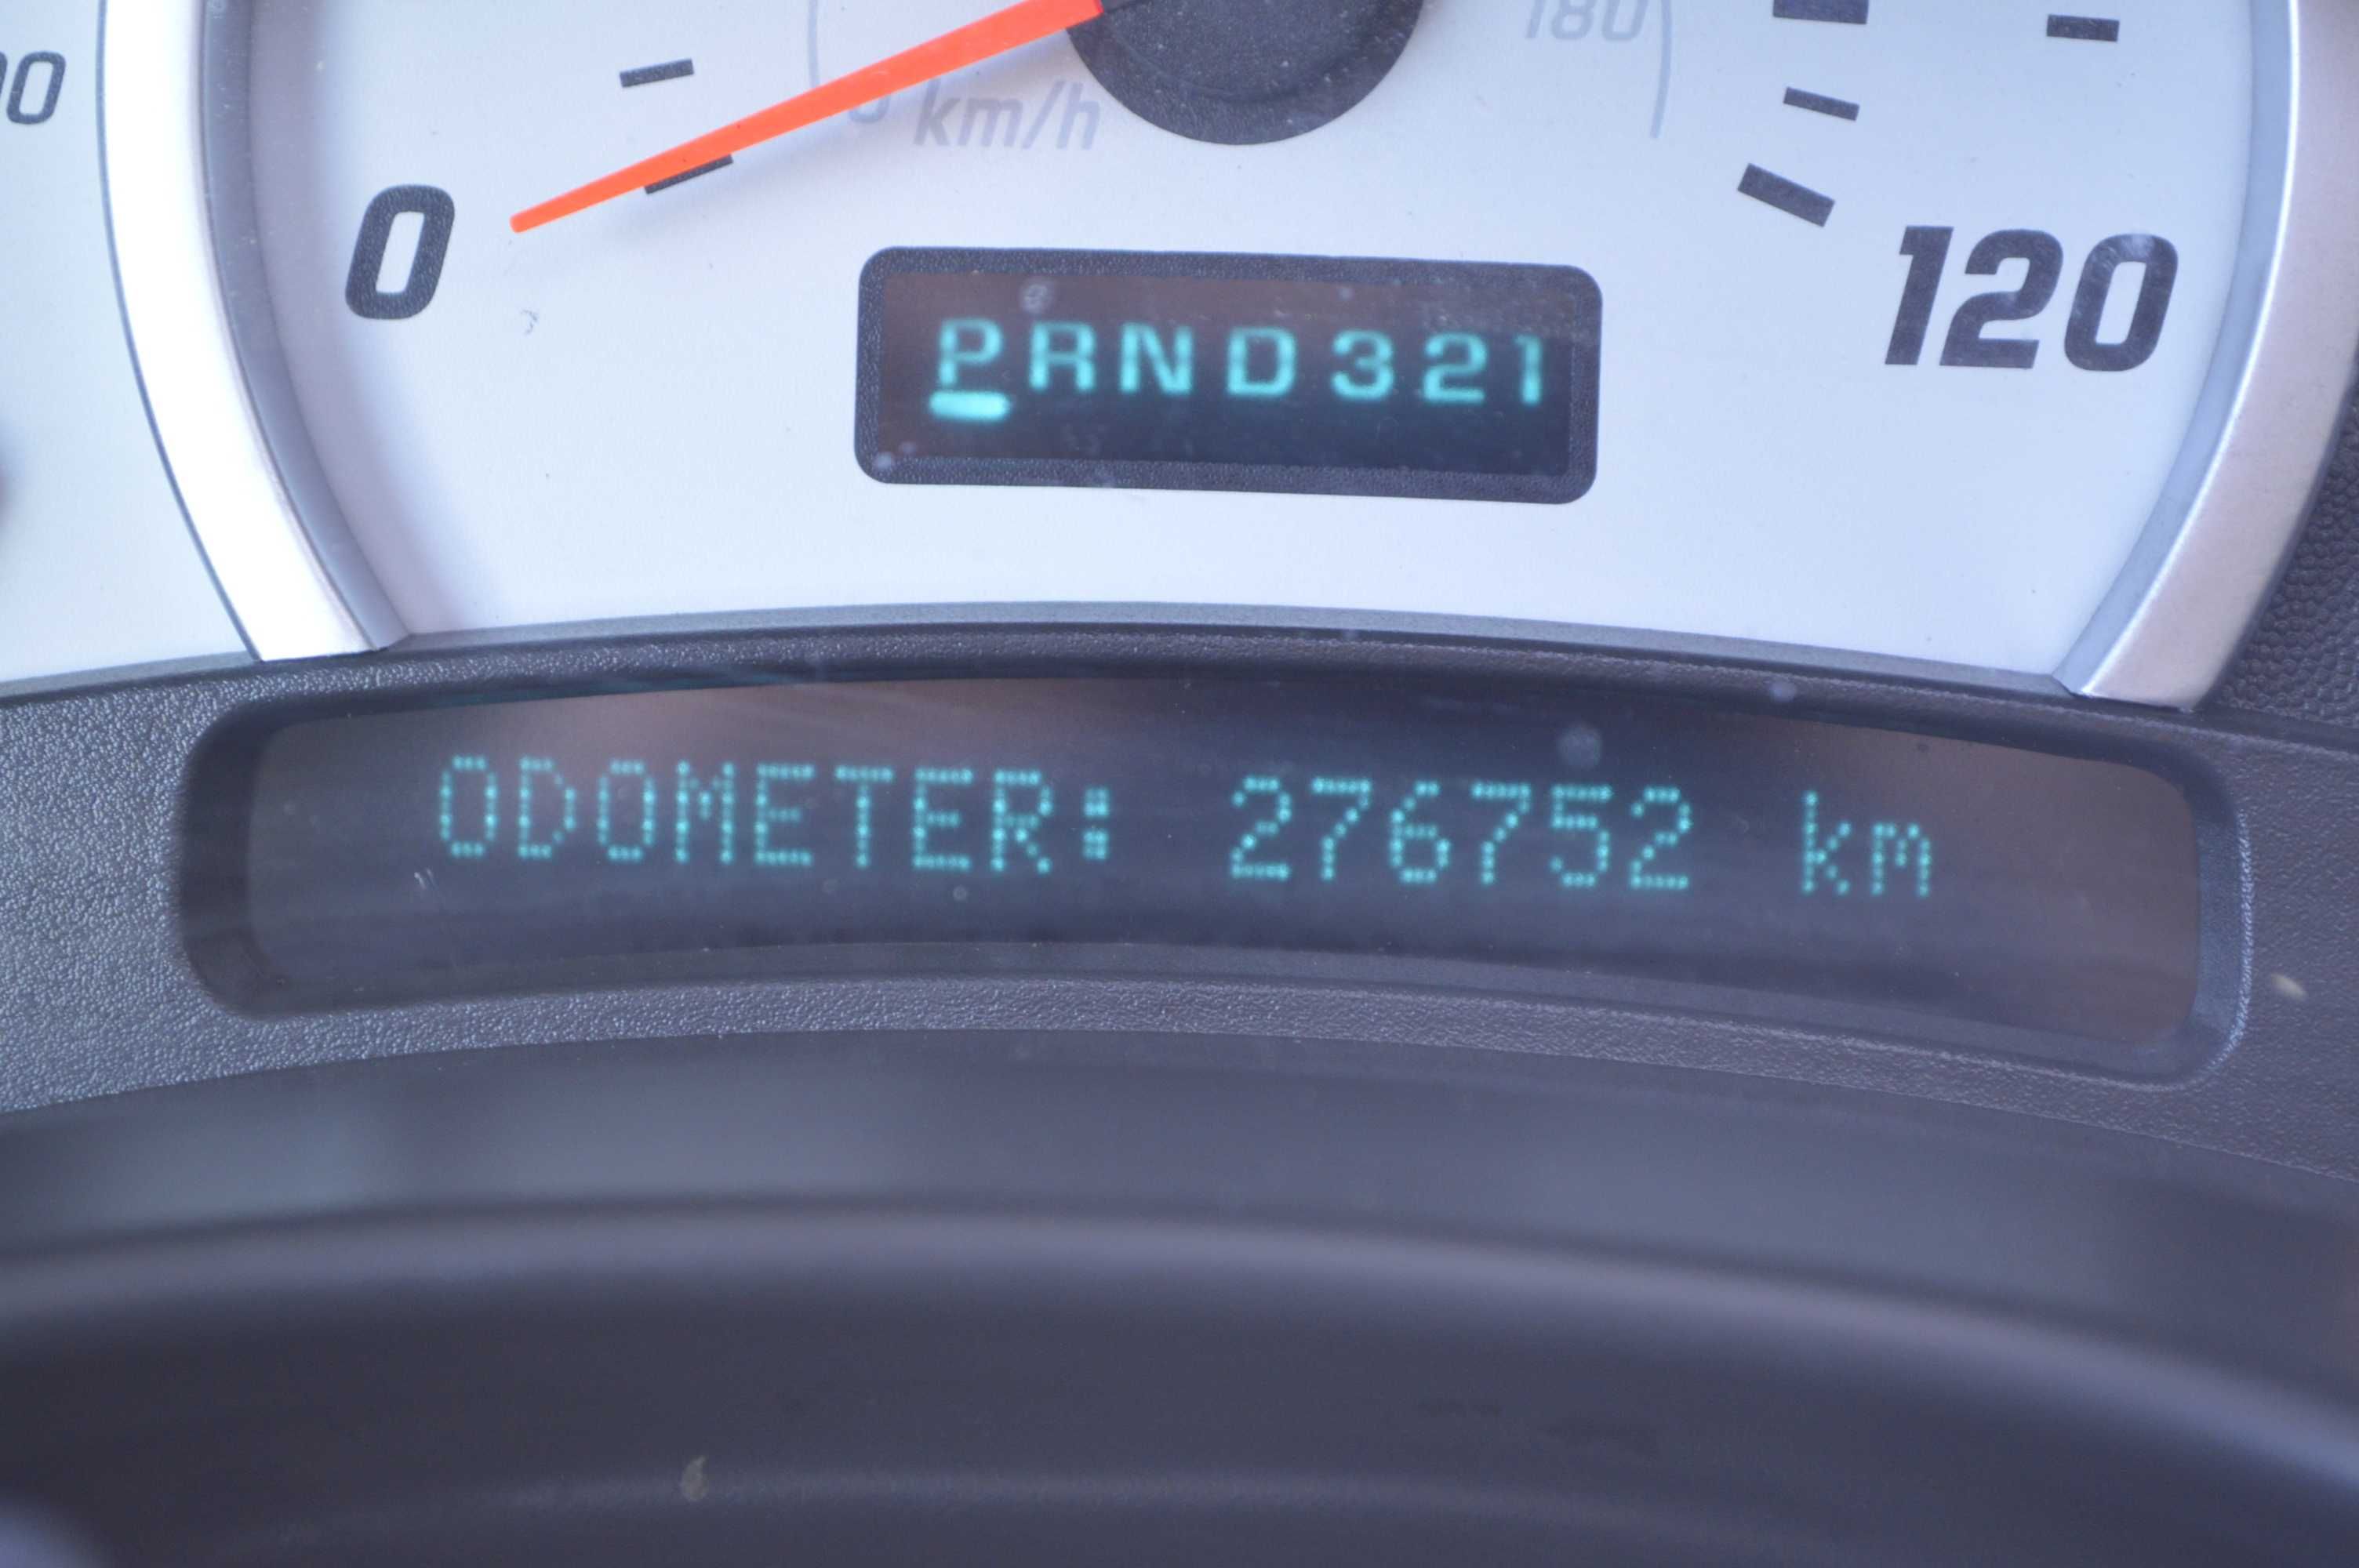 Hummer H2, 2003 год, 270 000км, 6.0 бензин\газ, Хаммер Ш2